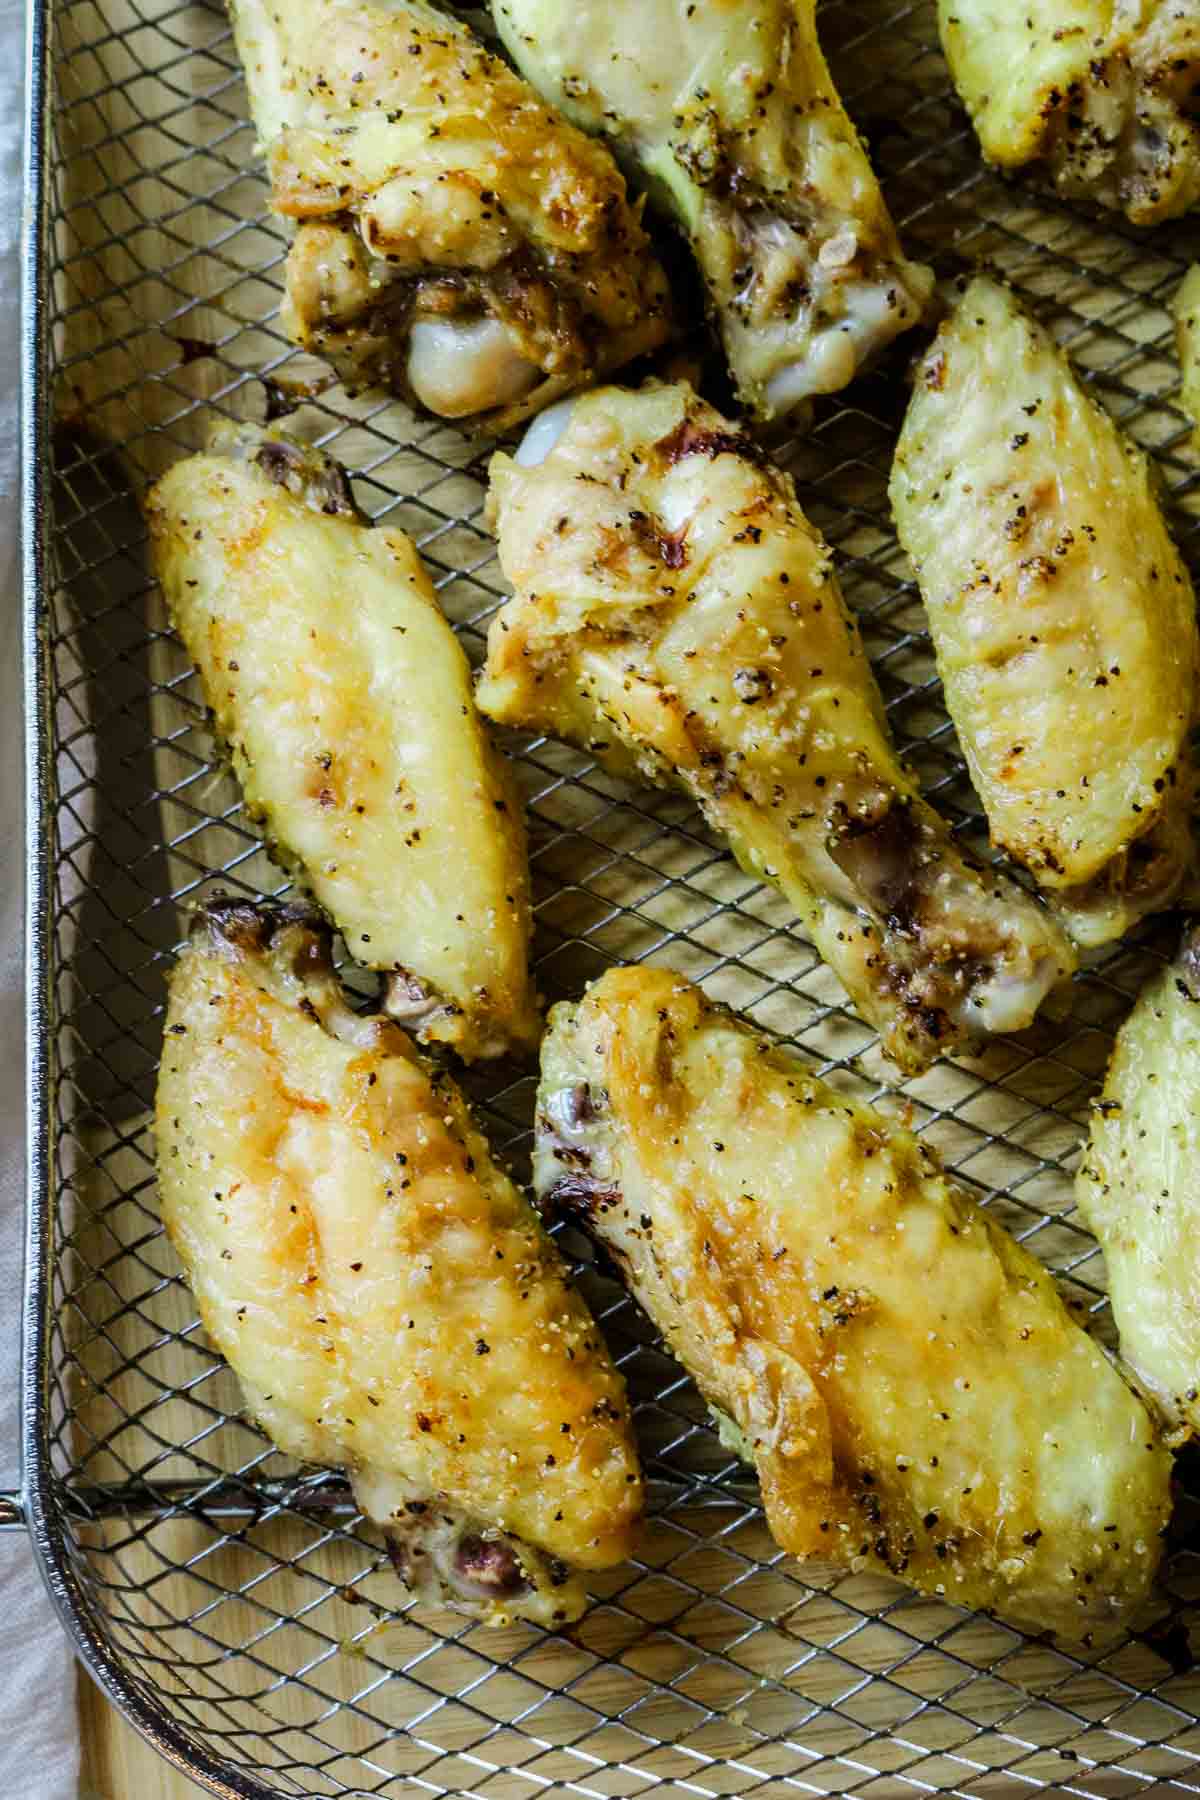 chicken wings spread out on crisper tray.